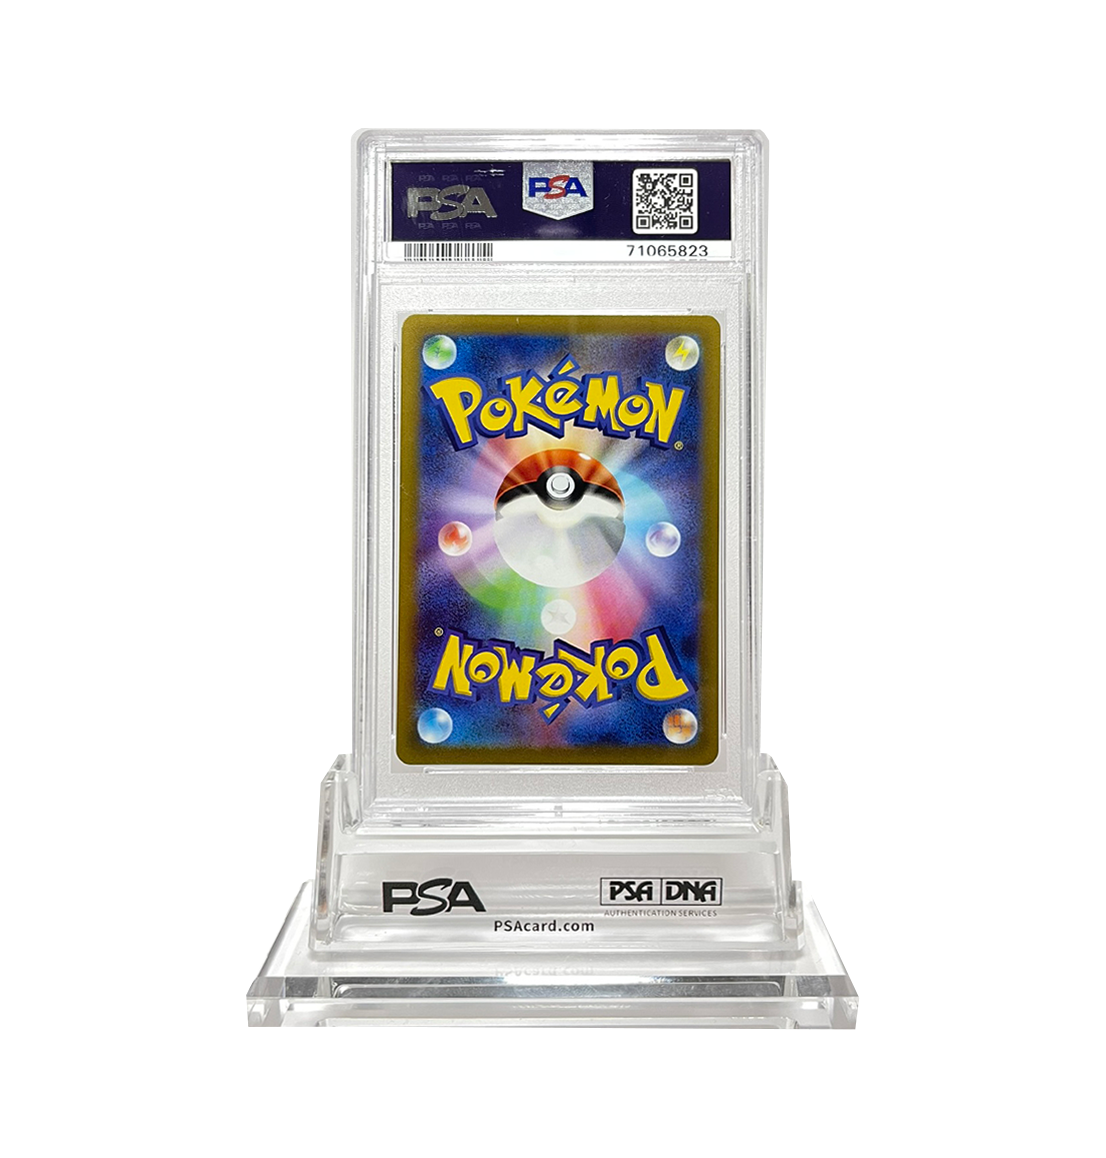 PSA 10 Psychic Energy #255 VStar Universe s12a Japanese Pokemon card